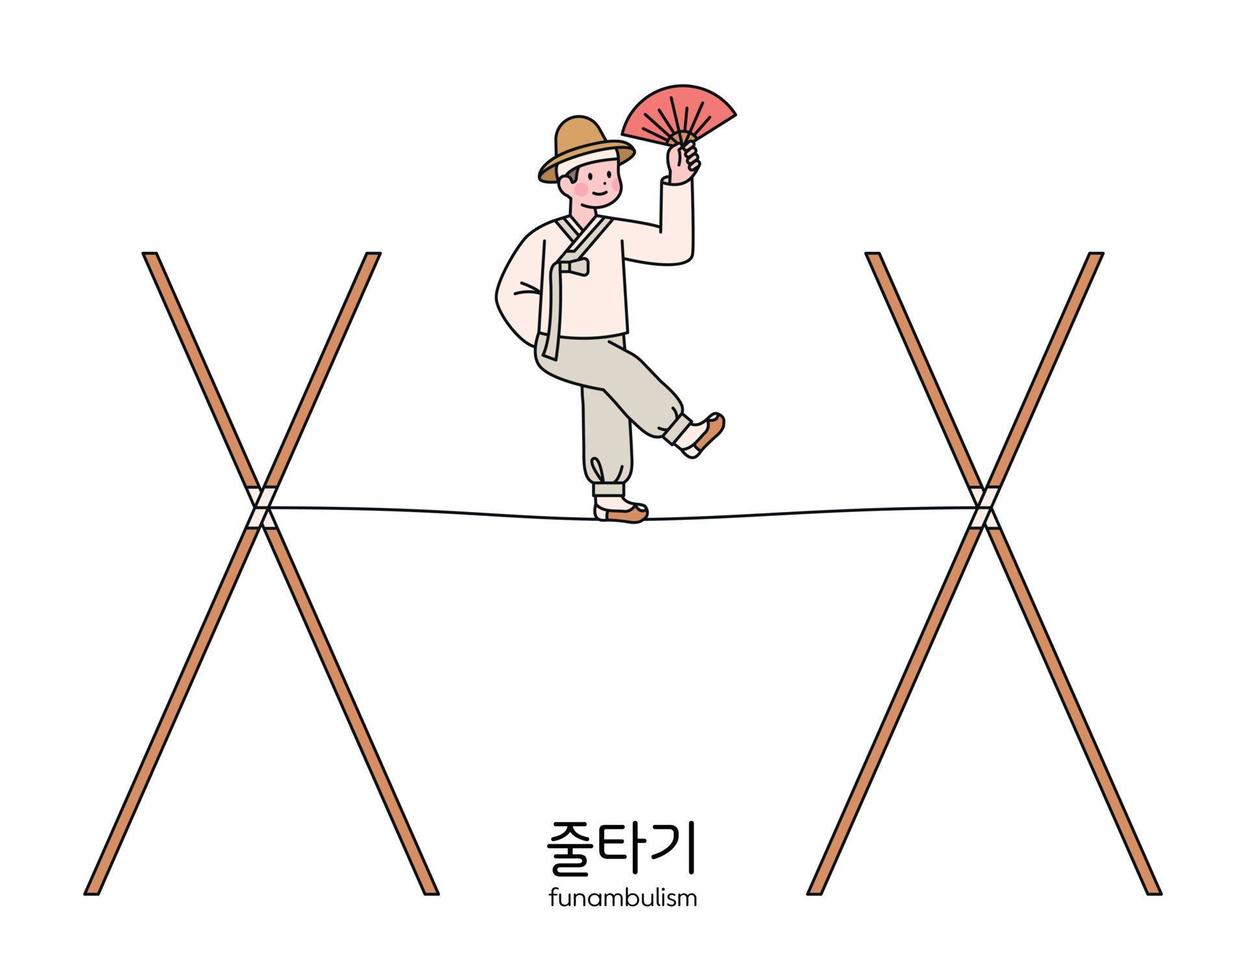 juego tradicional coreano. una persona caminando por la cuerda, un circo tradicional coreano. vector